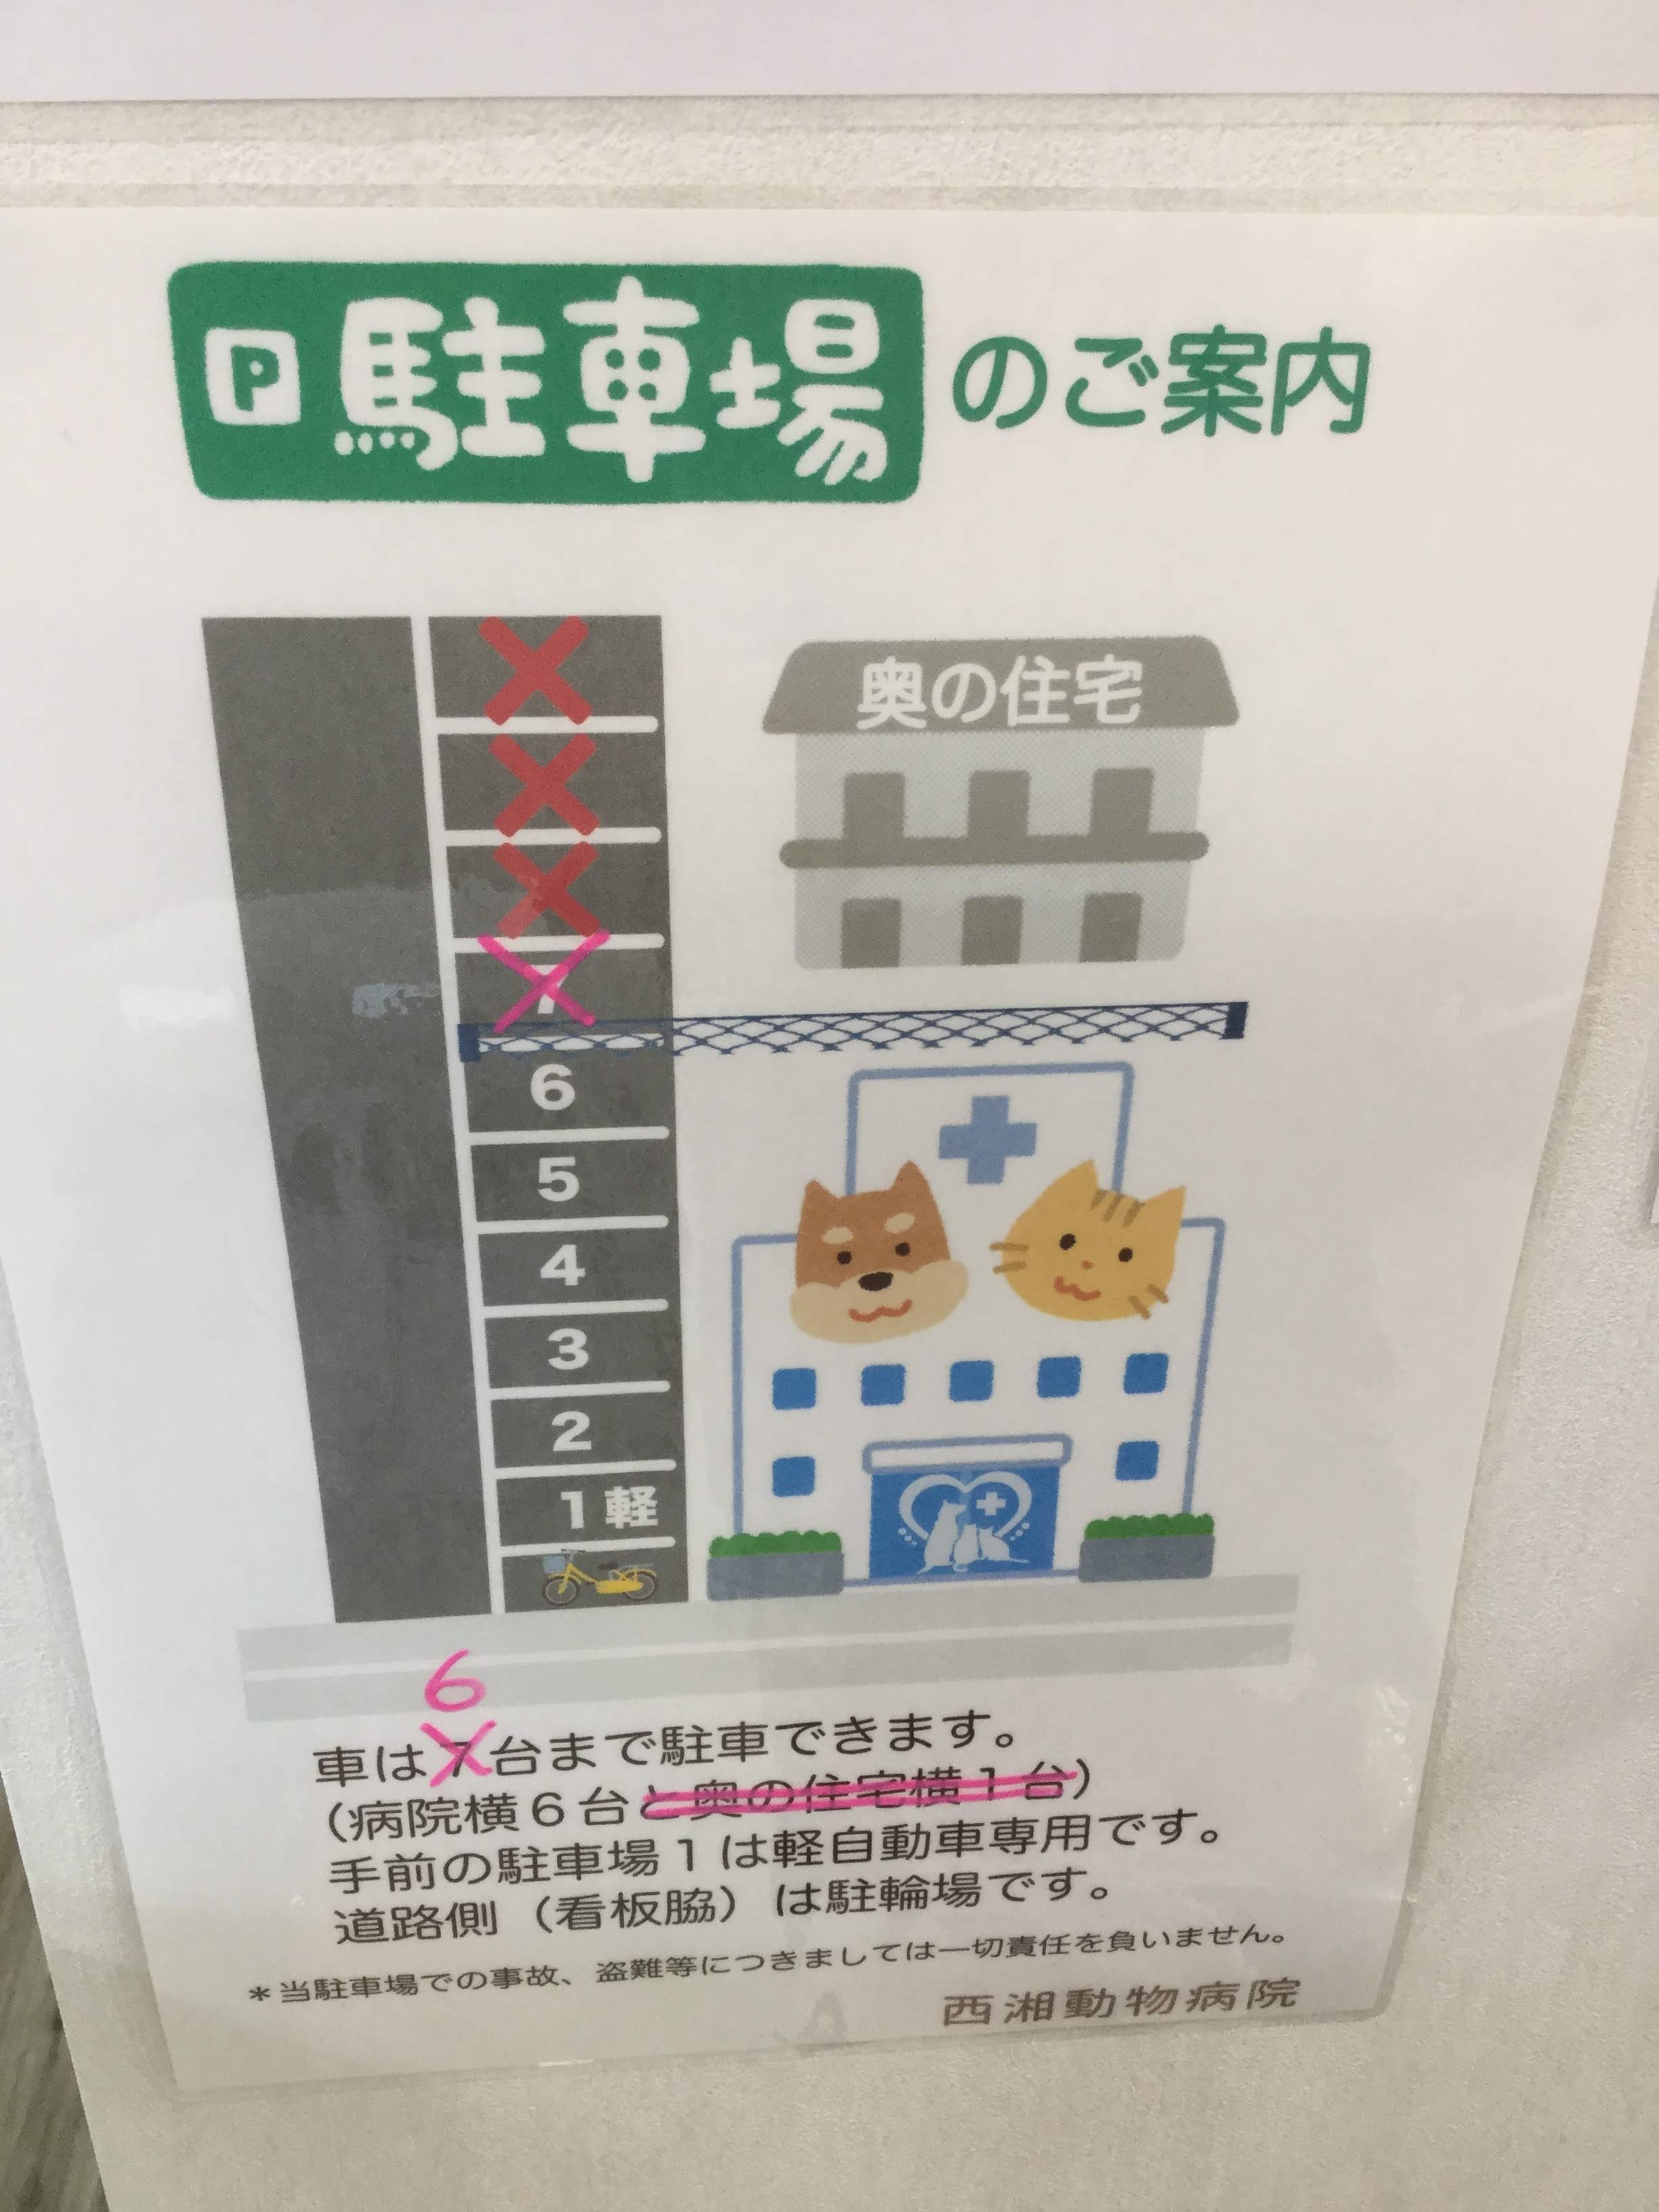 駐車場台数変更のお知らせ 西湘動物病院 神奈川県中郡二宮町の動物病院